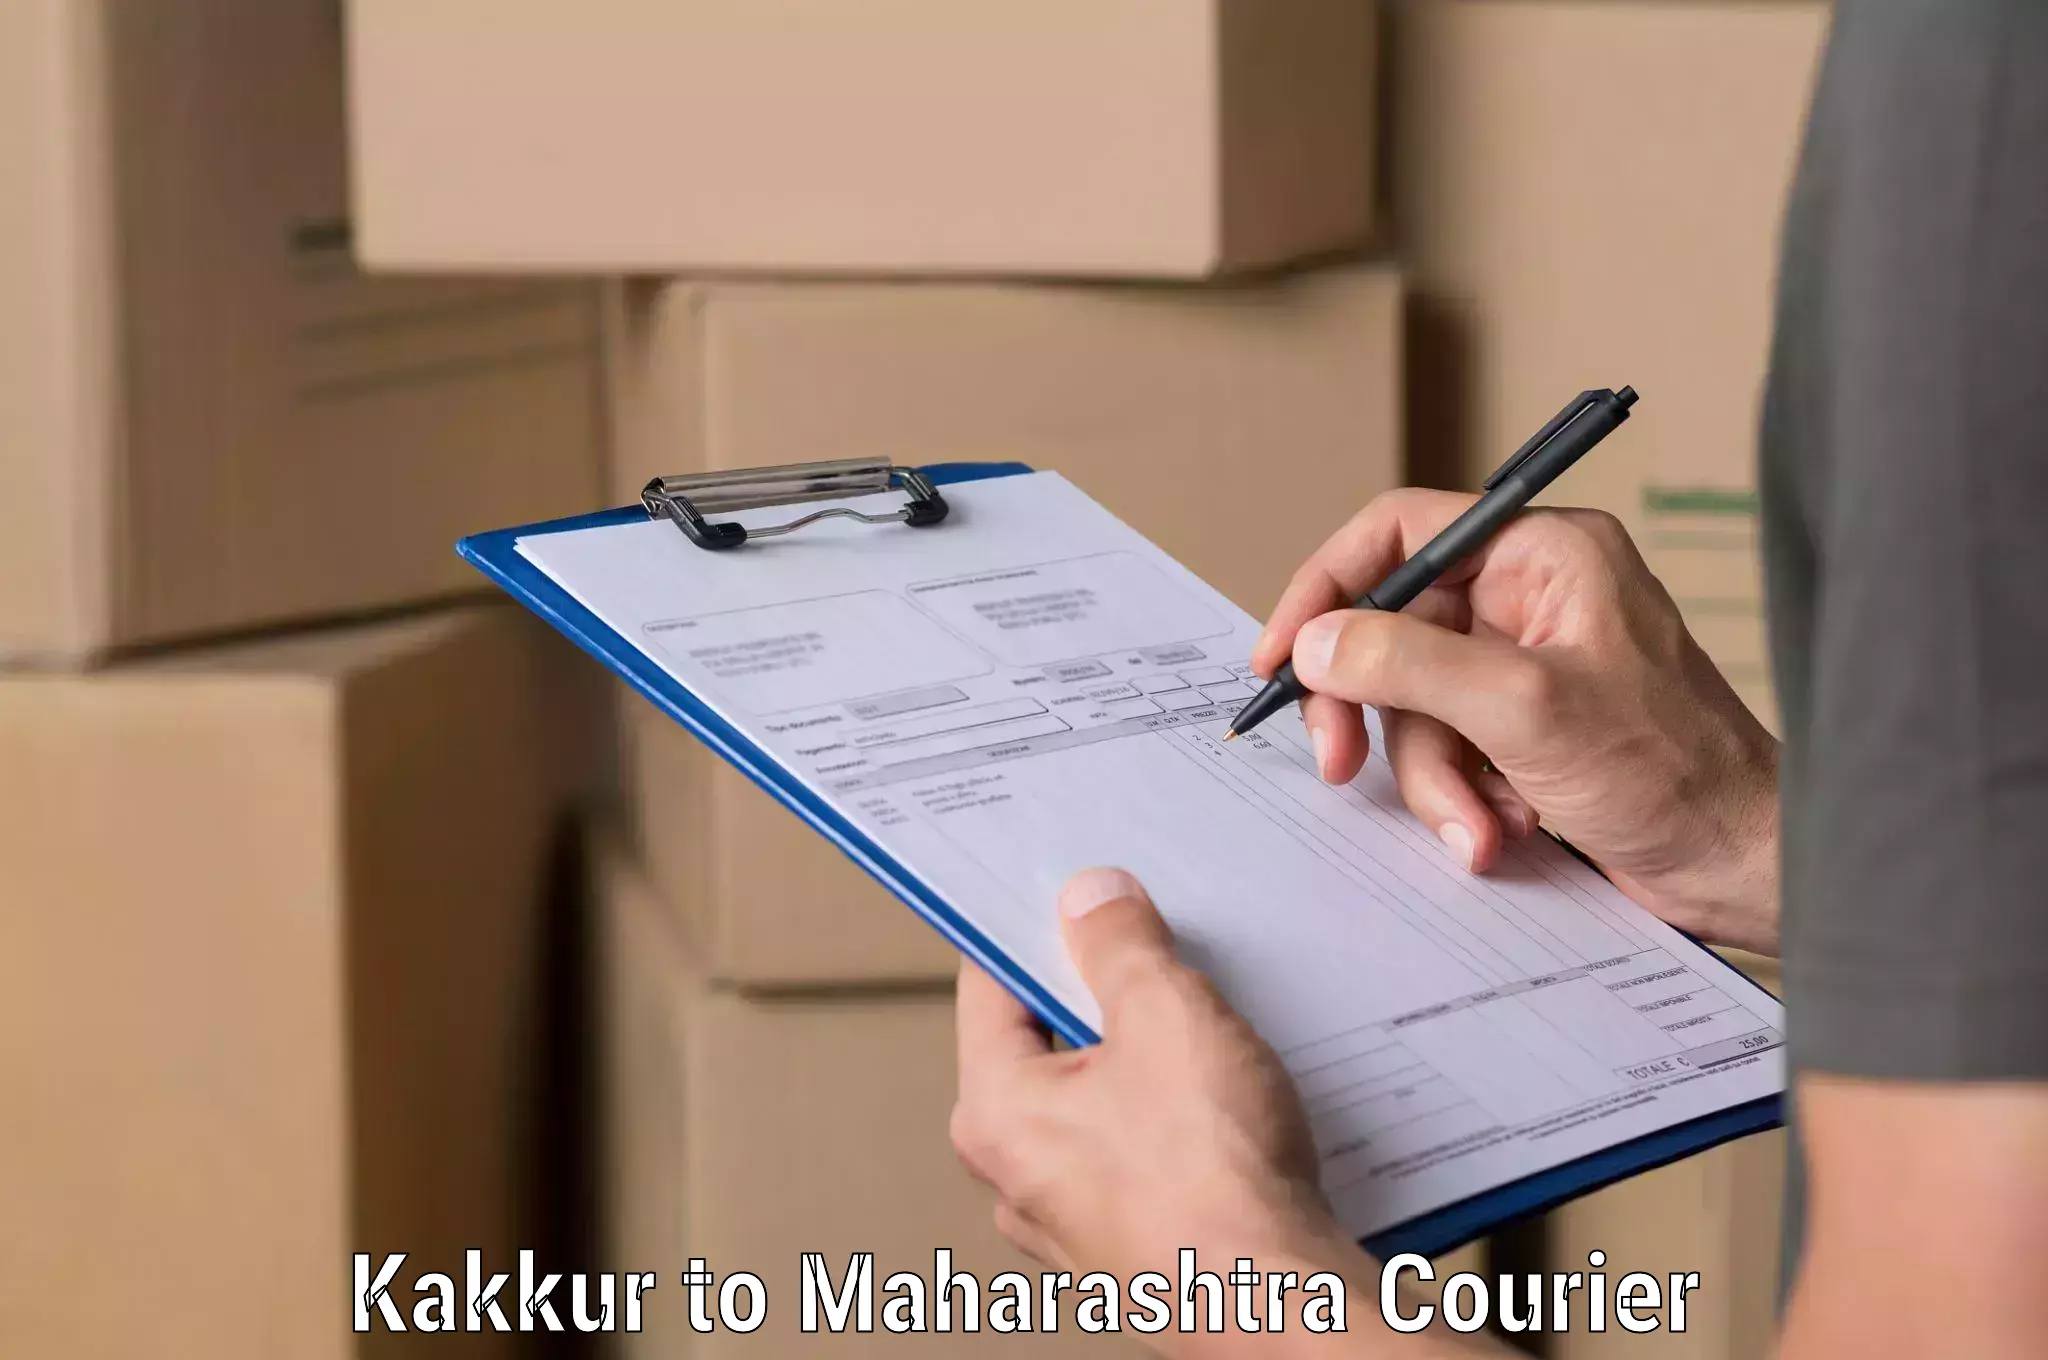 Express postal services Kakkur to Maharashtra